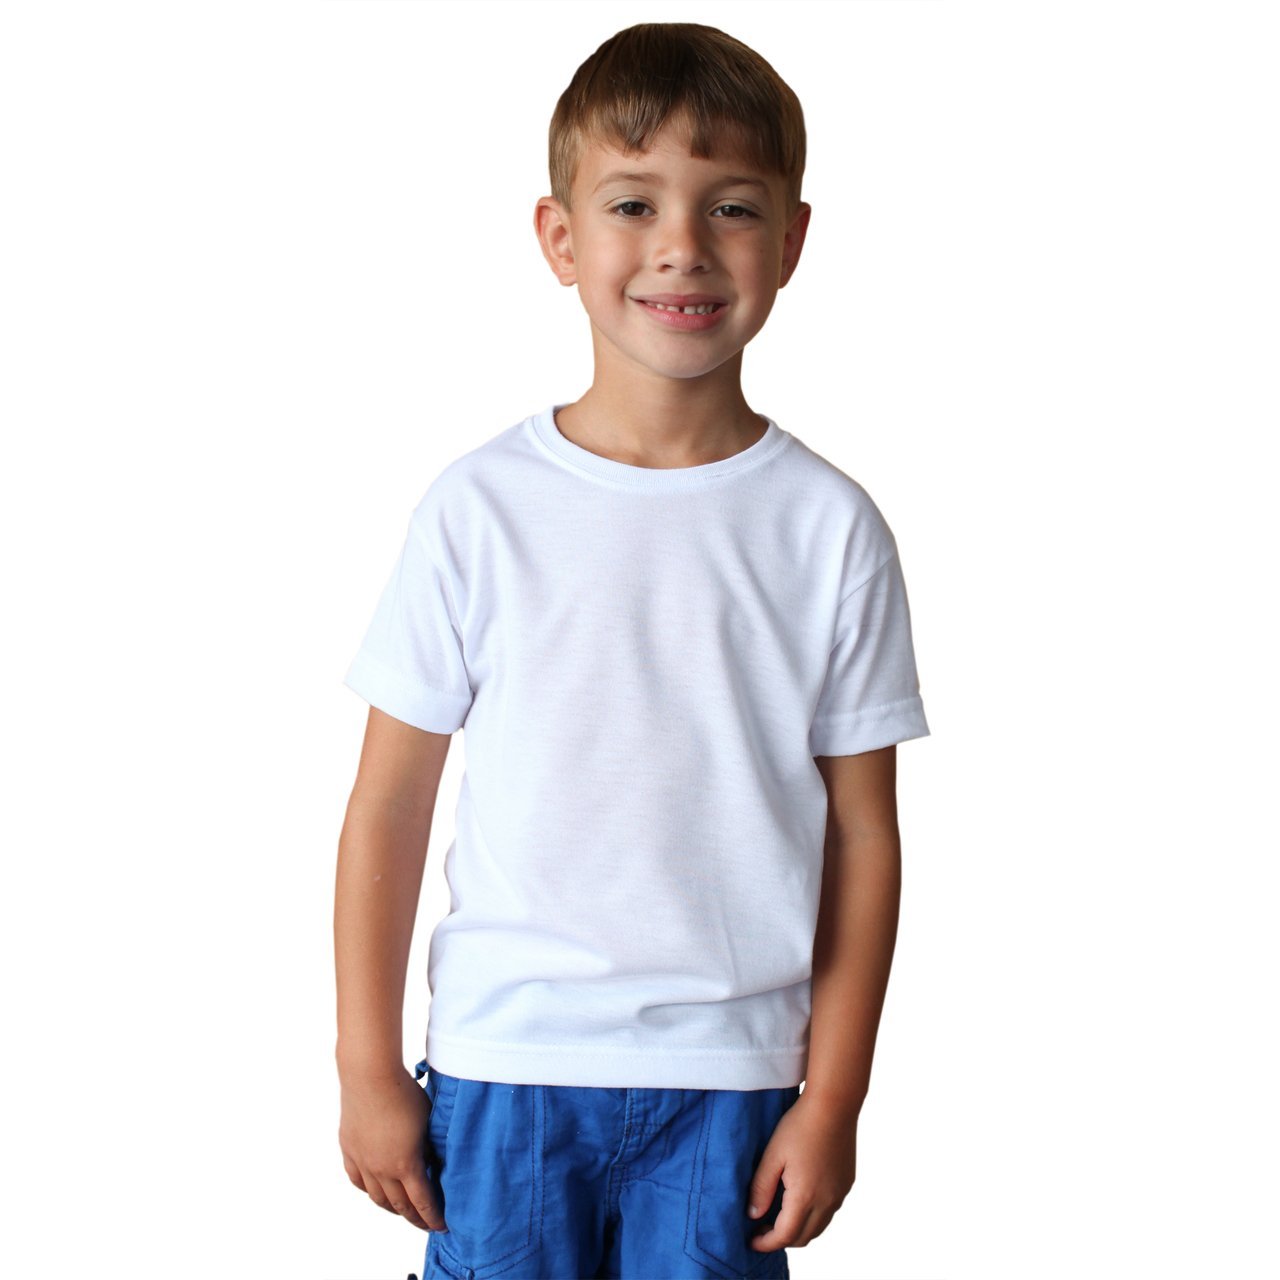 Toddler SpunSoft Tech Short Sleeve T-Shirt